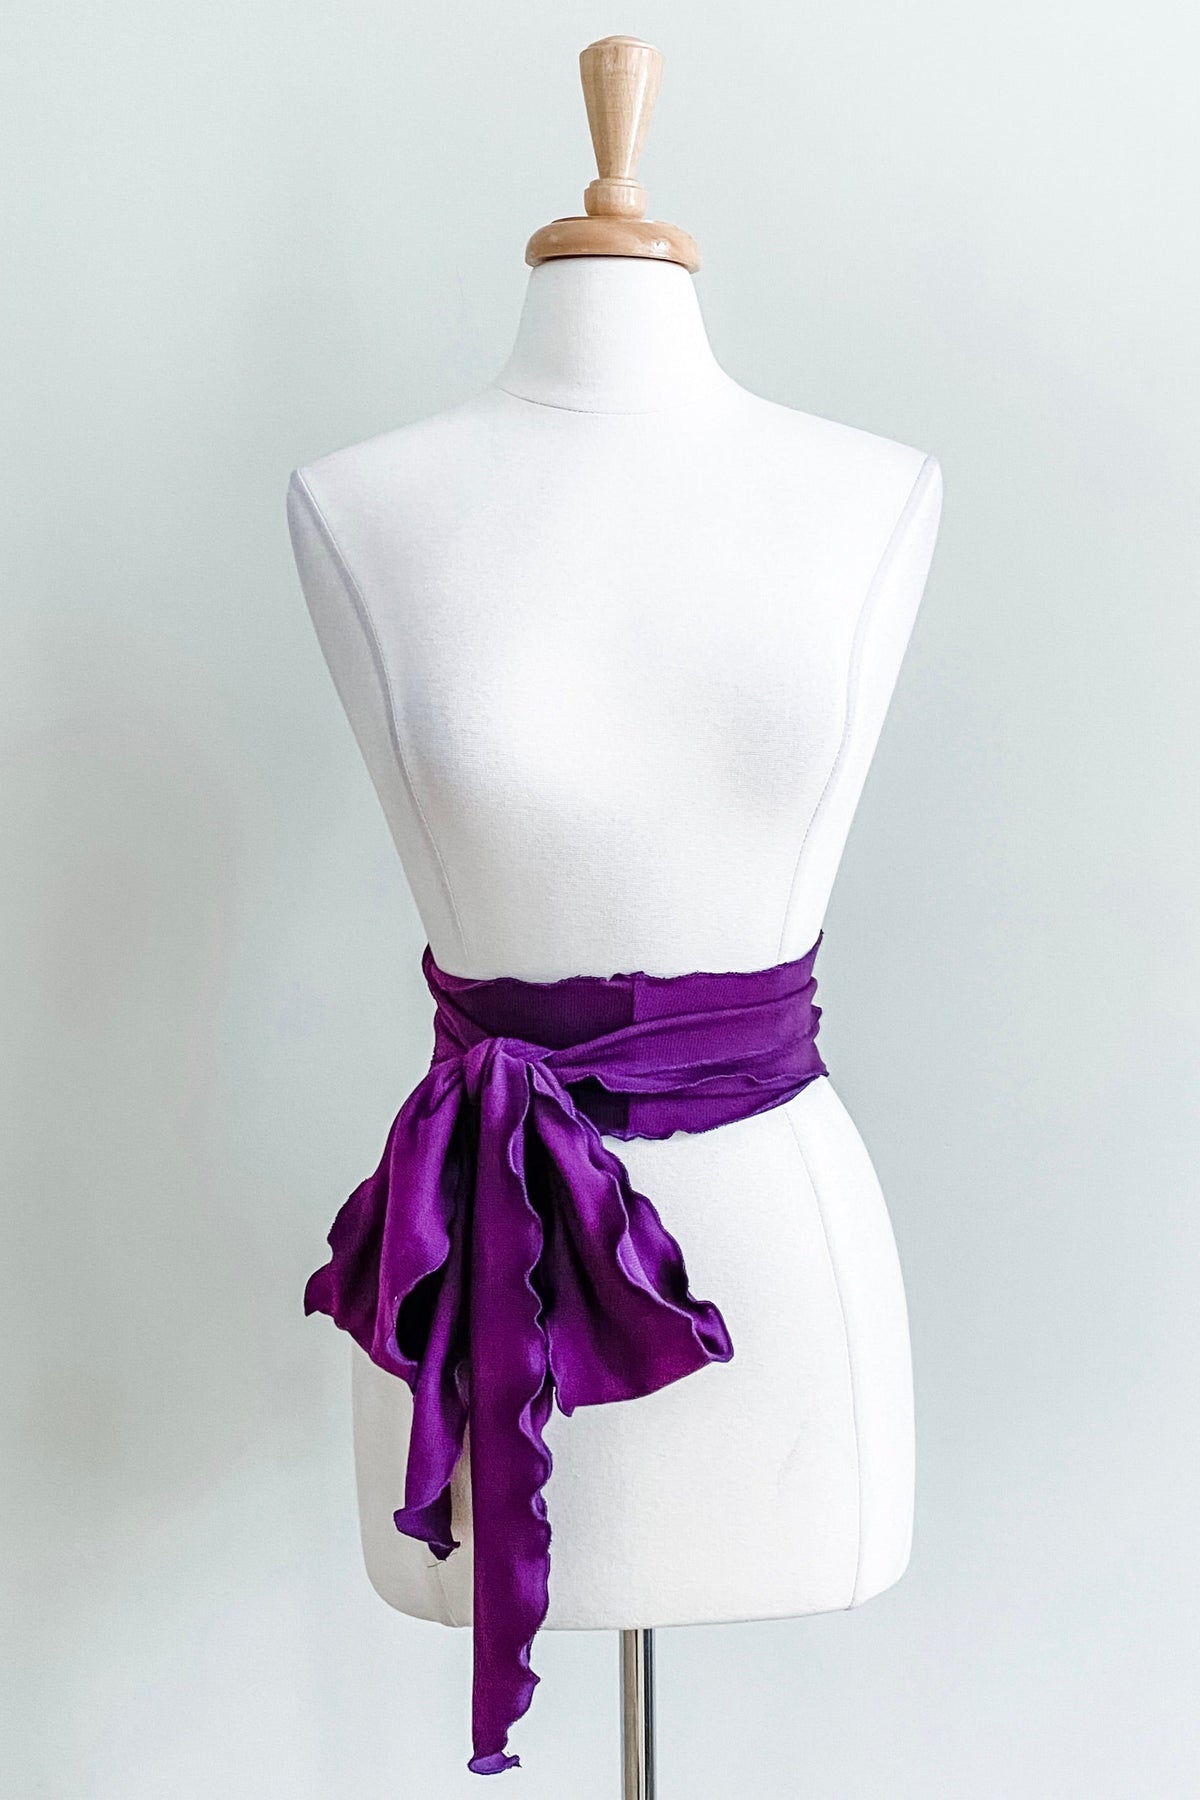 Diane Kroe - Scalloped Sash Belt in Infinity Knit (Violet)